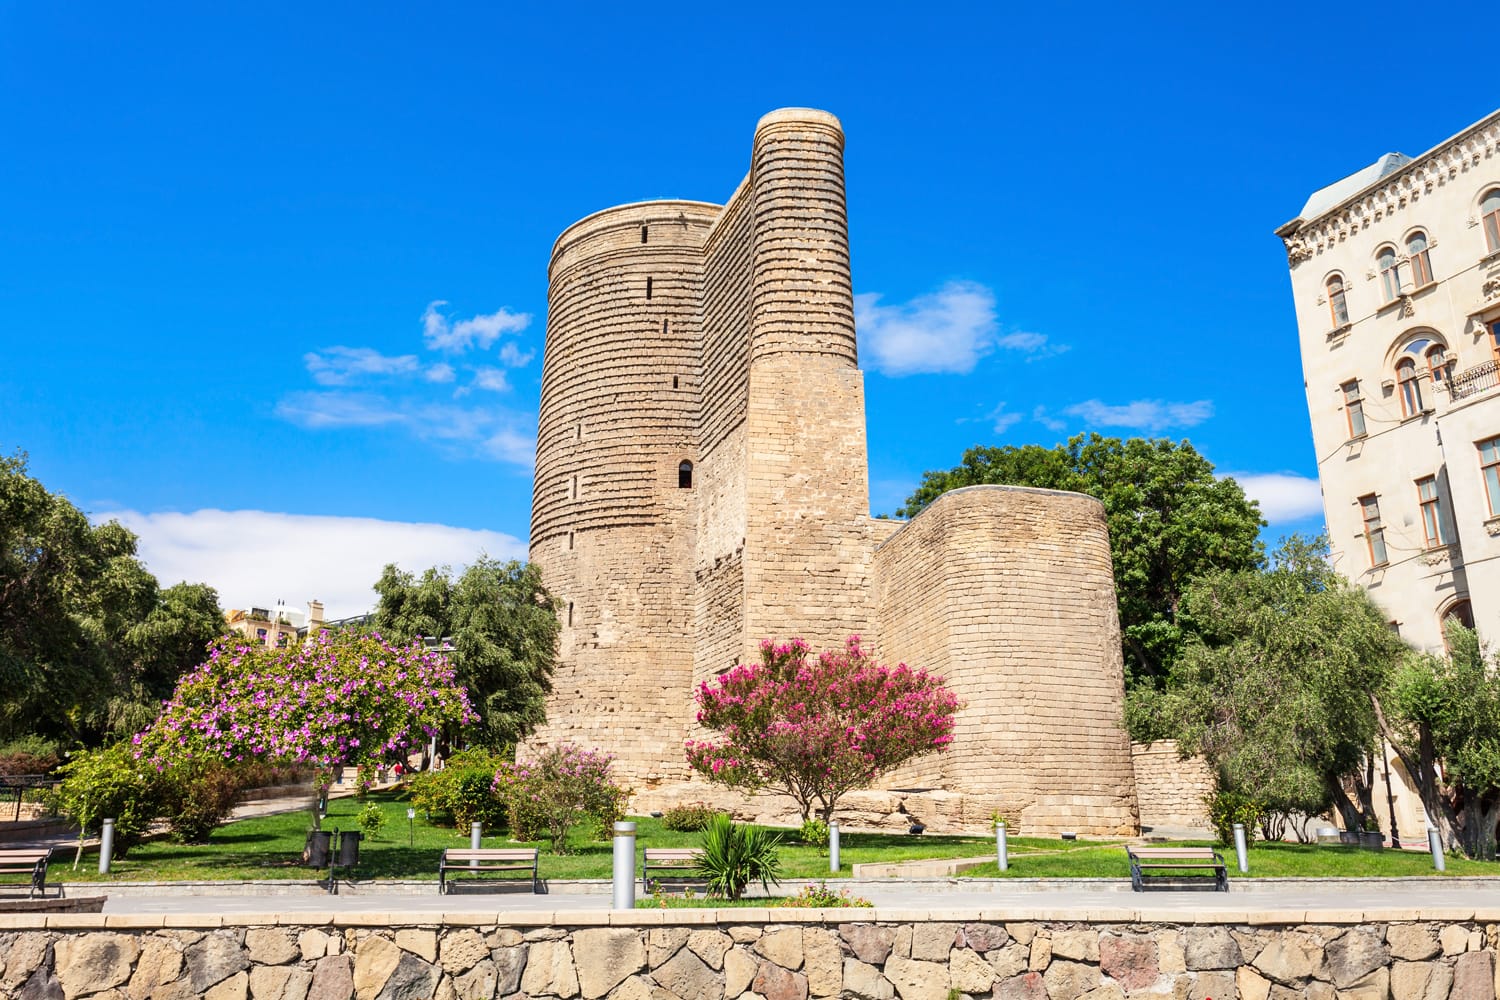 Ο Maiden Tower γνωστός και ως Giz Galasi, βρίσκεται στην Παλιά Πόλη στο Μπακού του Αζερμπαϊτζάν. Το Maiden Tower χτίστηκε τον 12ο αιώνα ως μέρος της περιτειχισμένης πόλης.